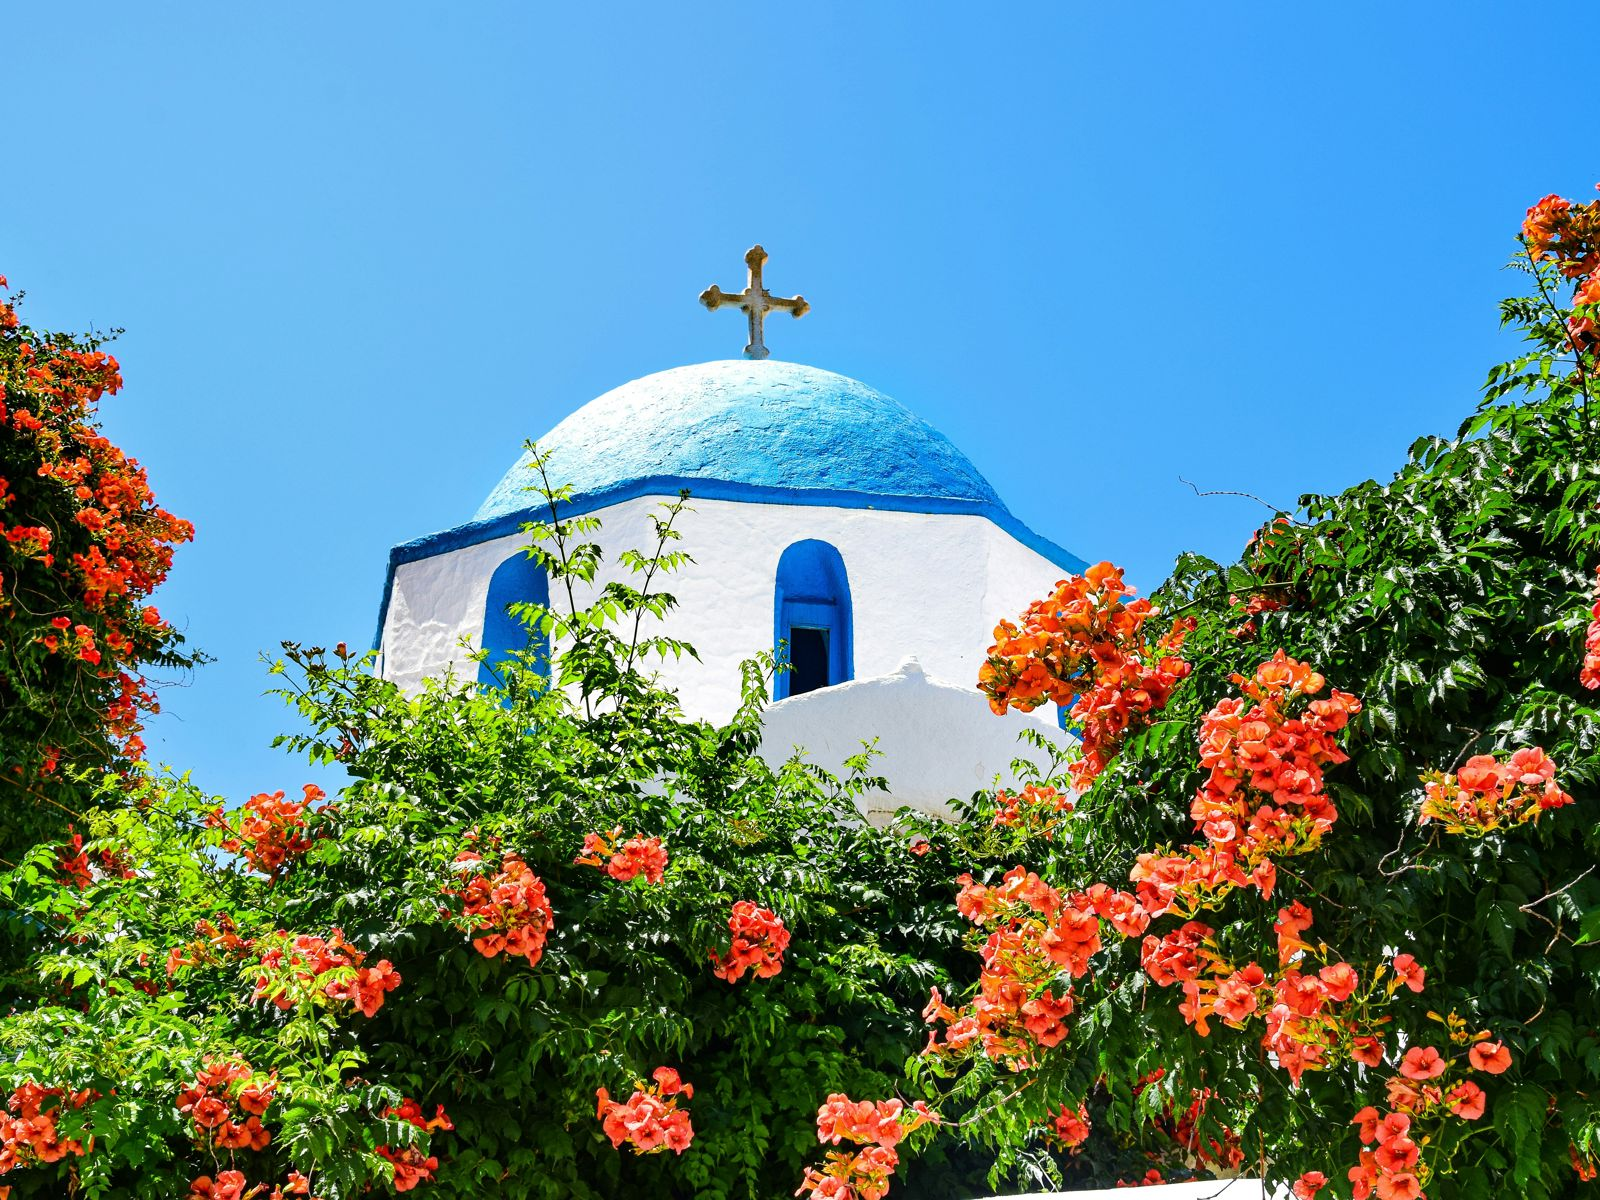 Græsk kirketårn med blåt tag omgivet af grønne områder og smukke blomster